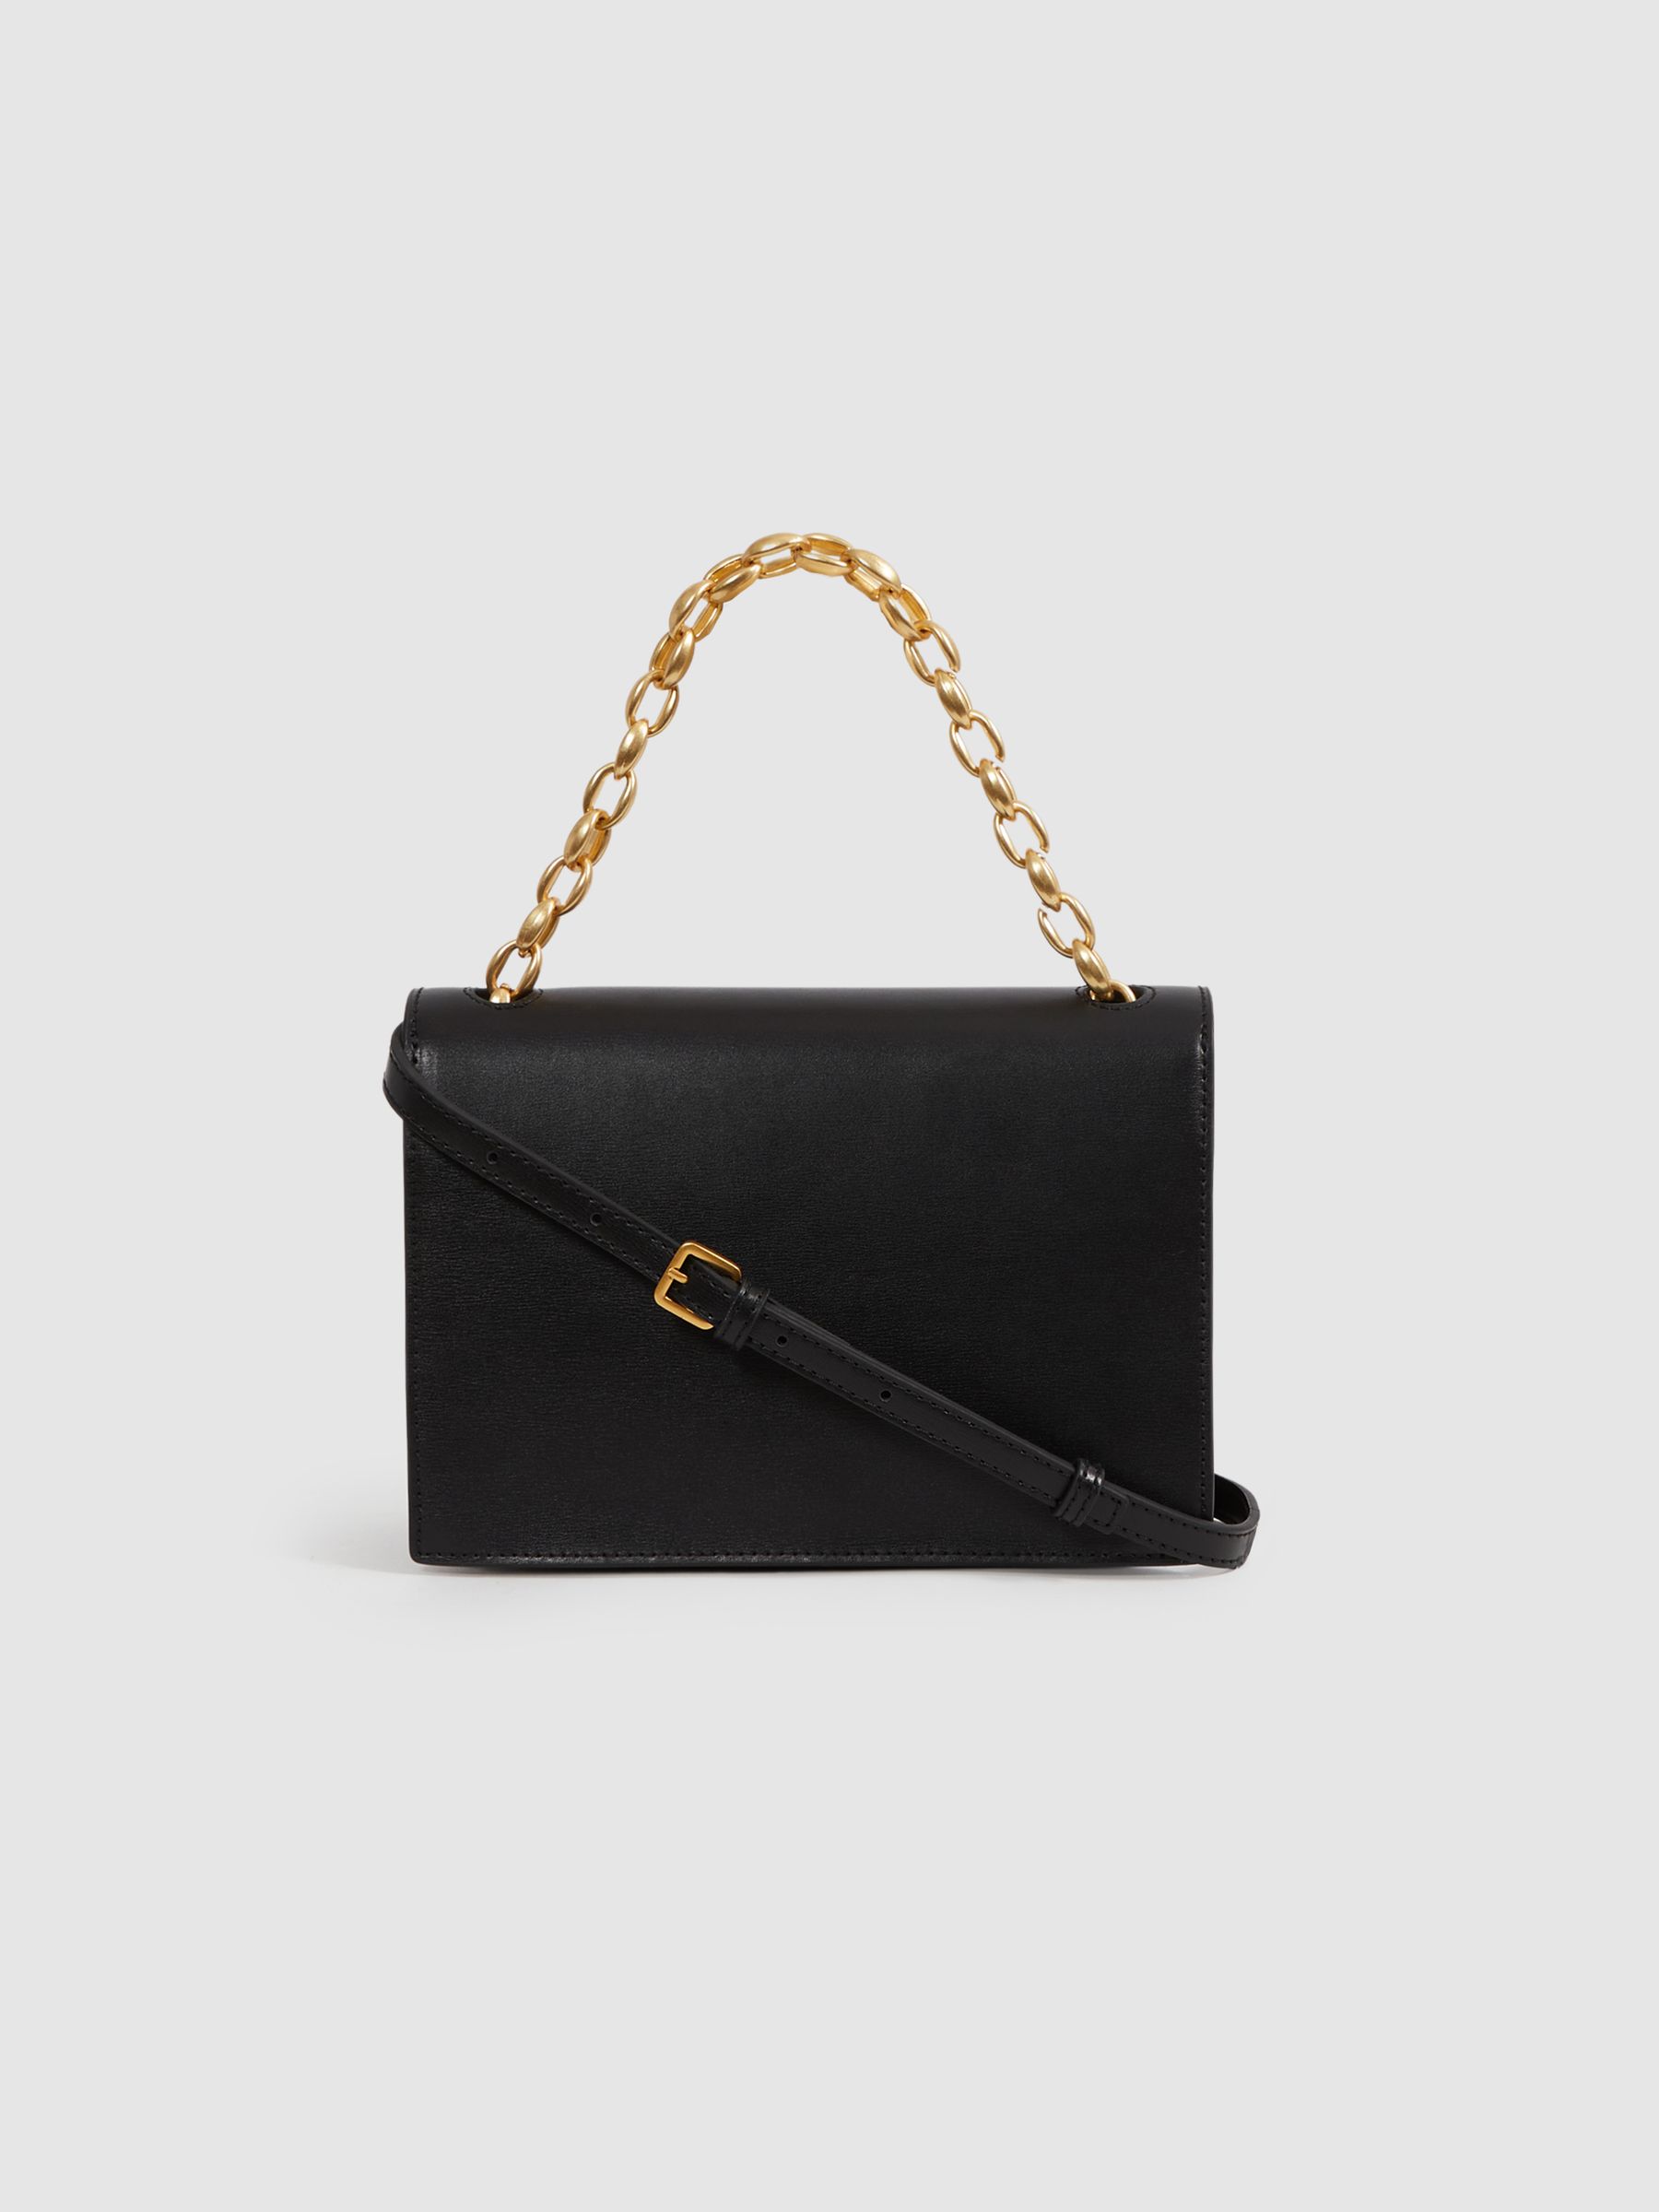 Reiss Sloane Leather Chain Handbag - REISS